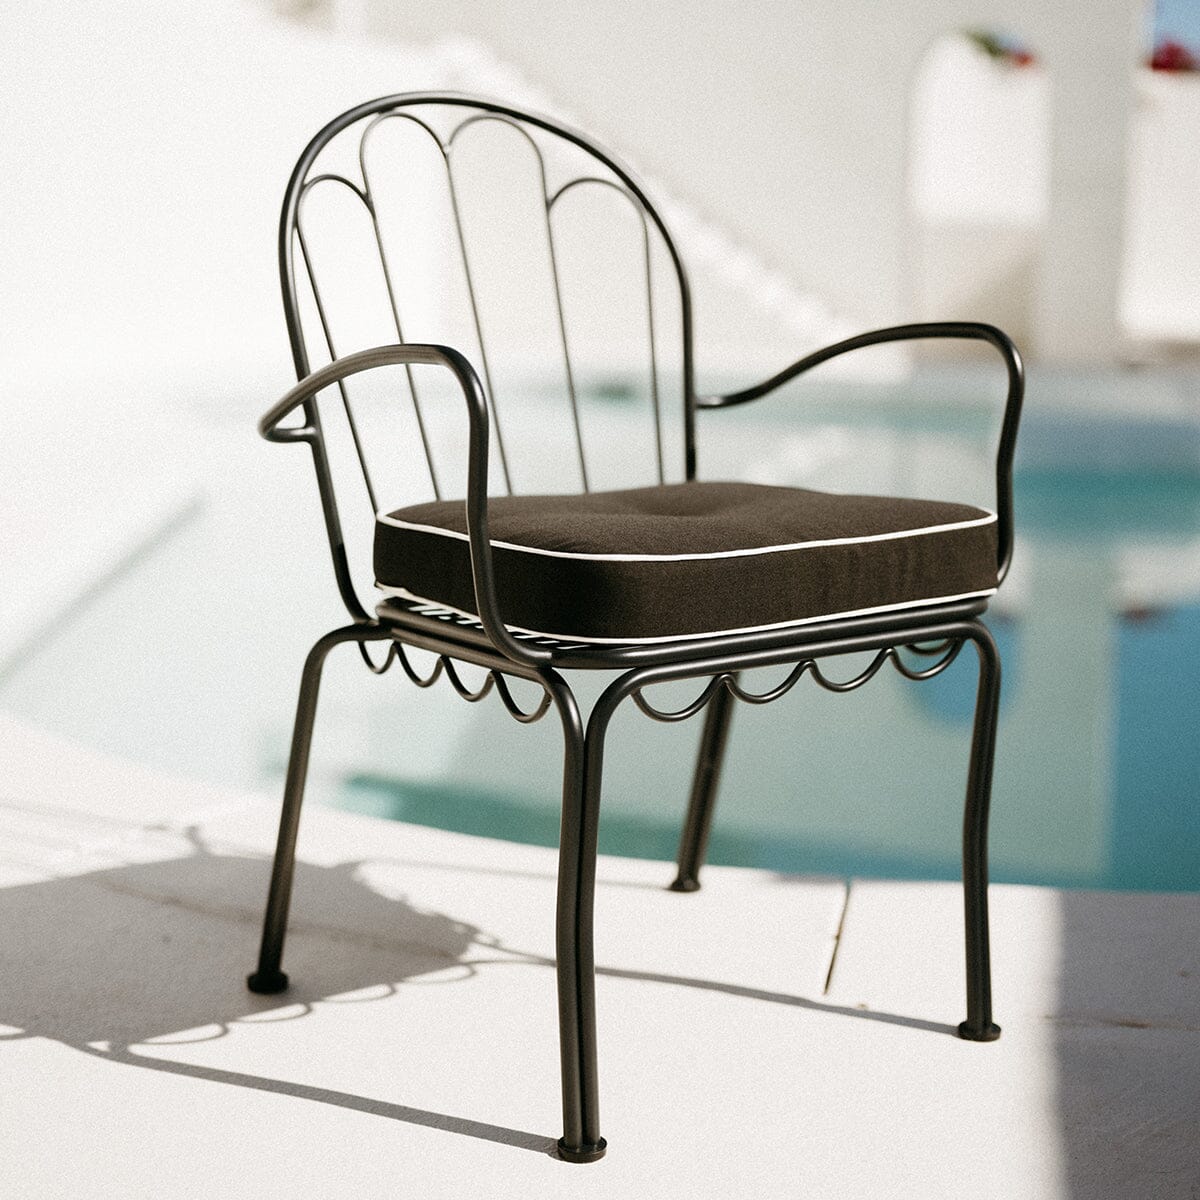 The Al Fresco Dining Chair - Vintage Black Al Fresco Dining Chair Business & Pleasure Co Aus 